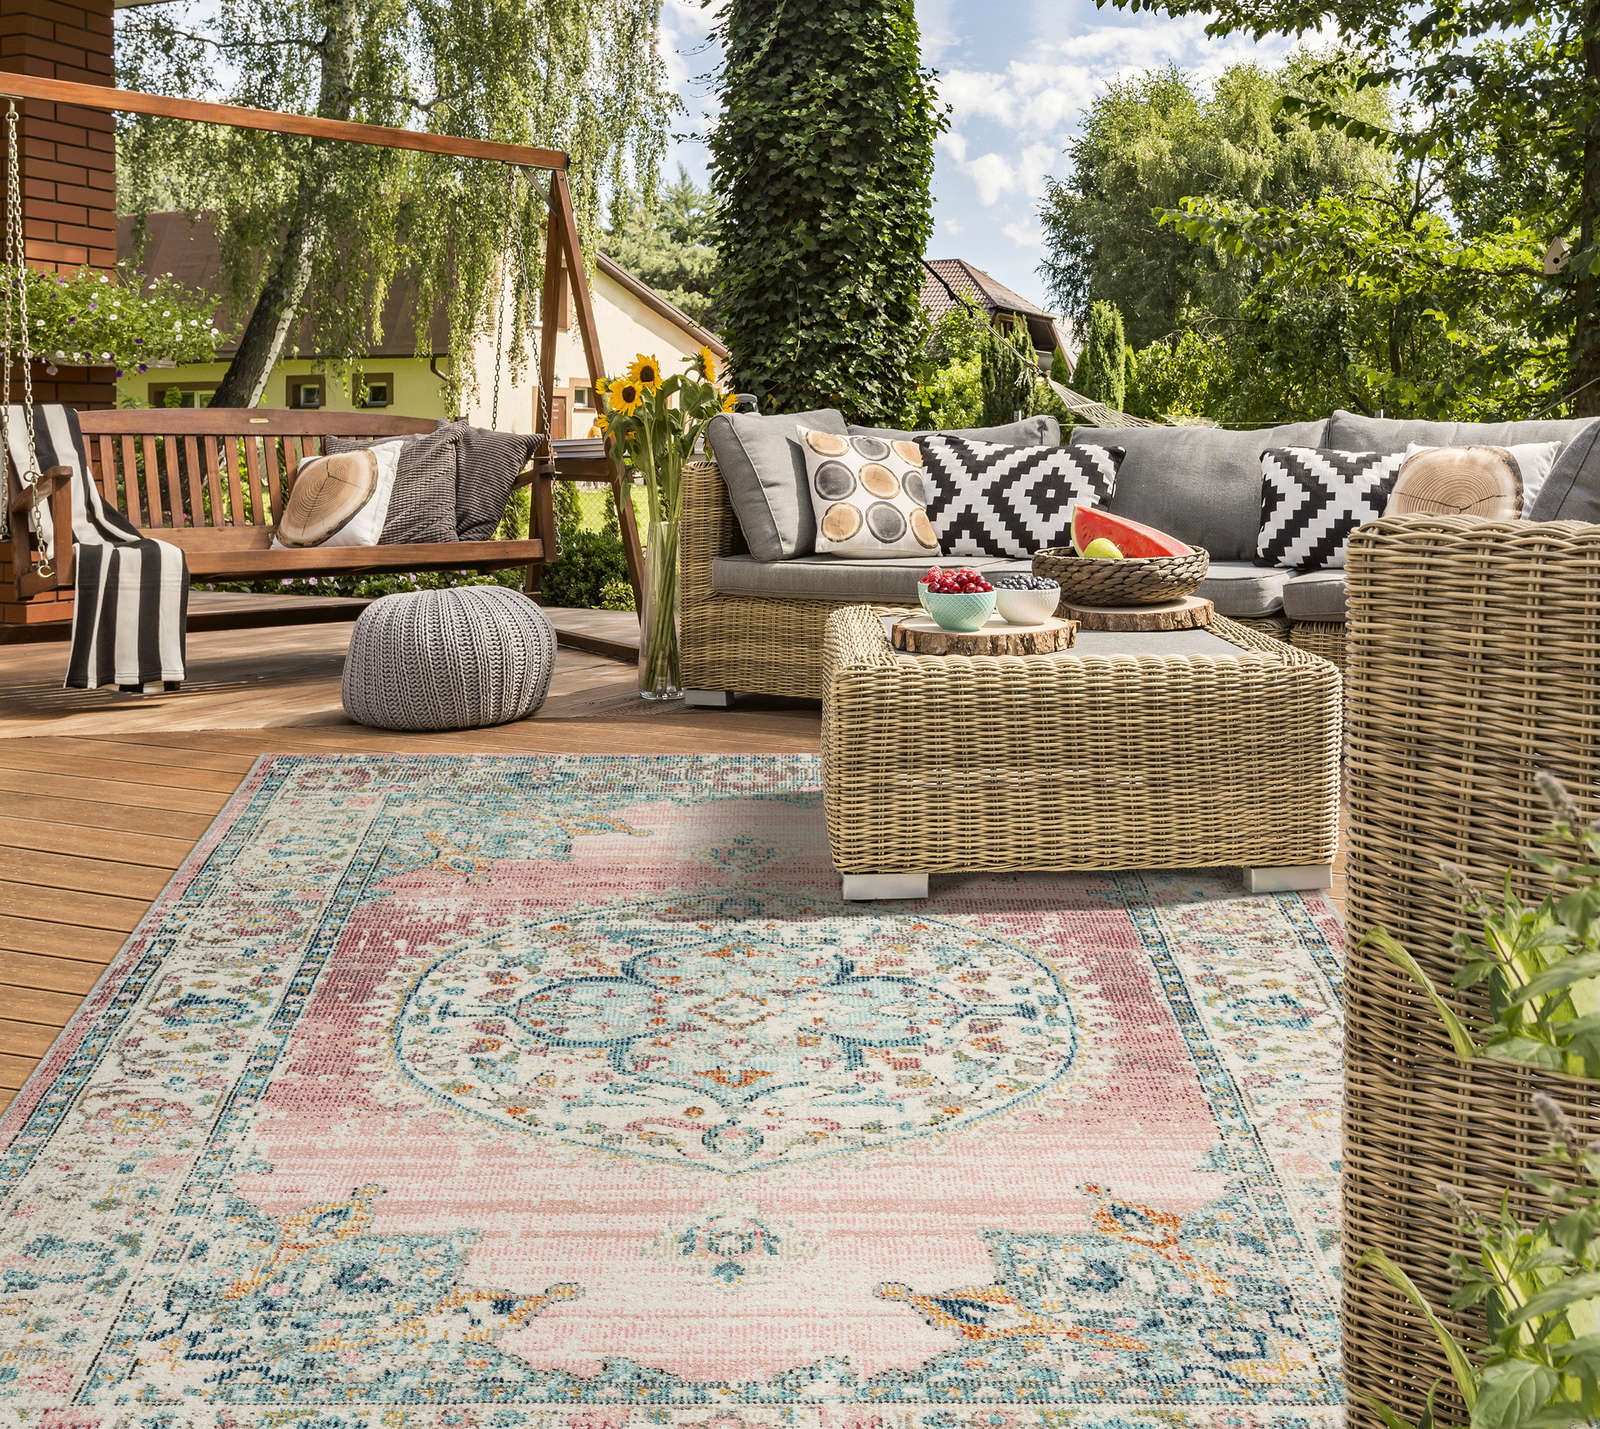             Outdoor Teppich aus Flachgewebe mit Pinken Akzenten – 340 x 240 cm
        